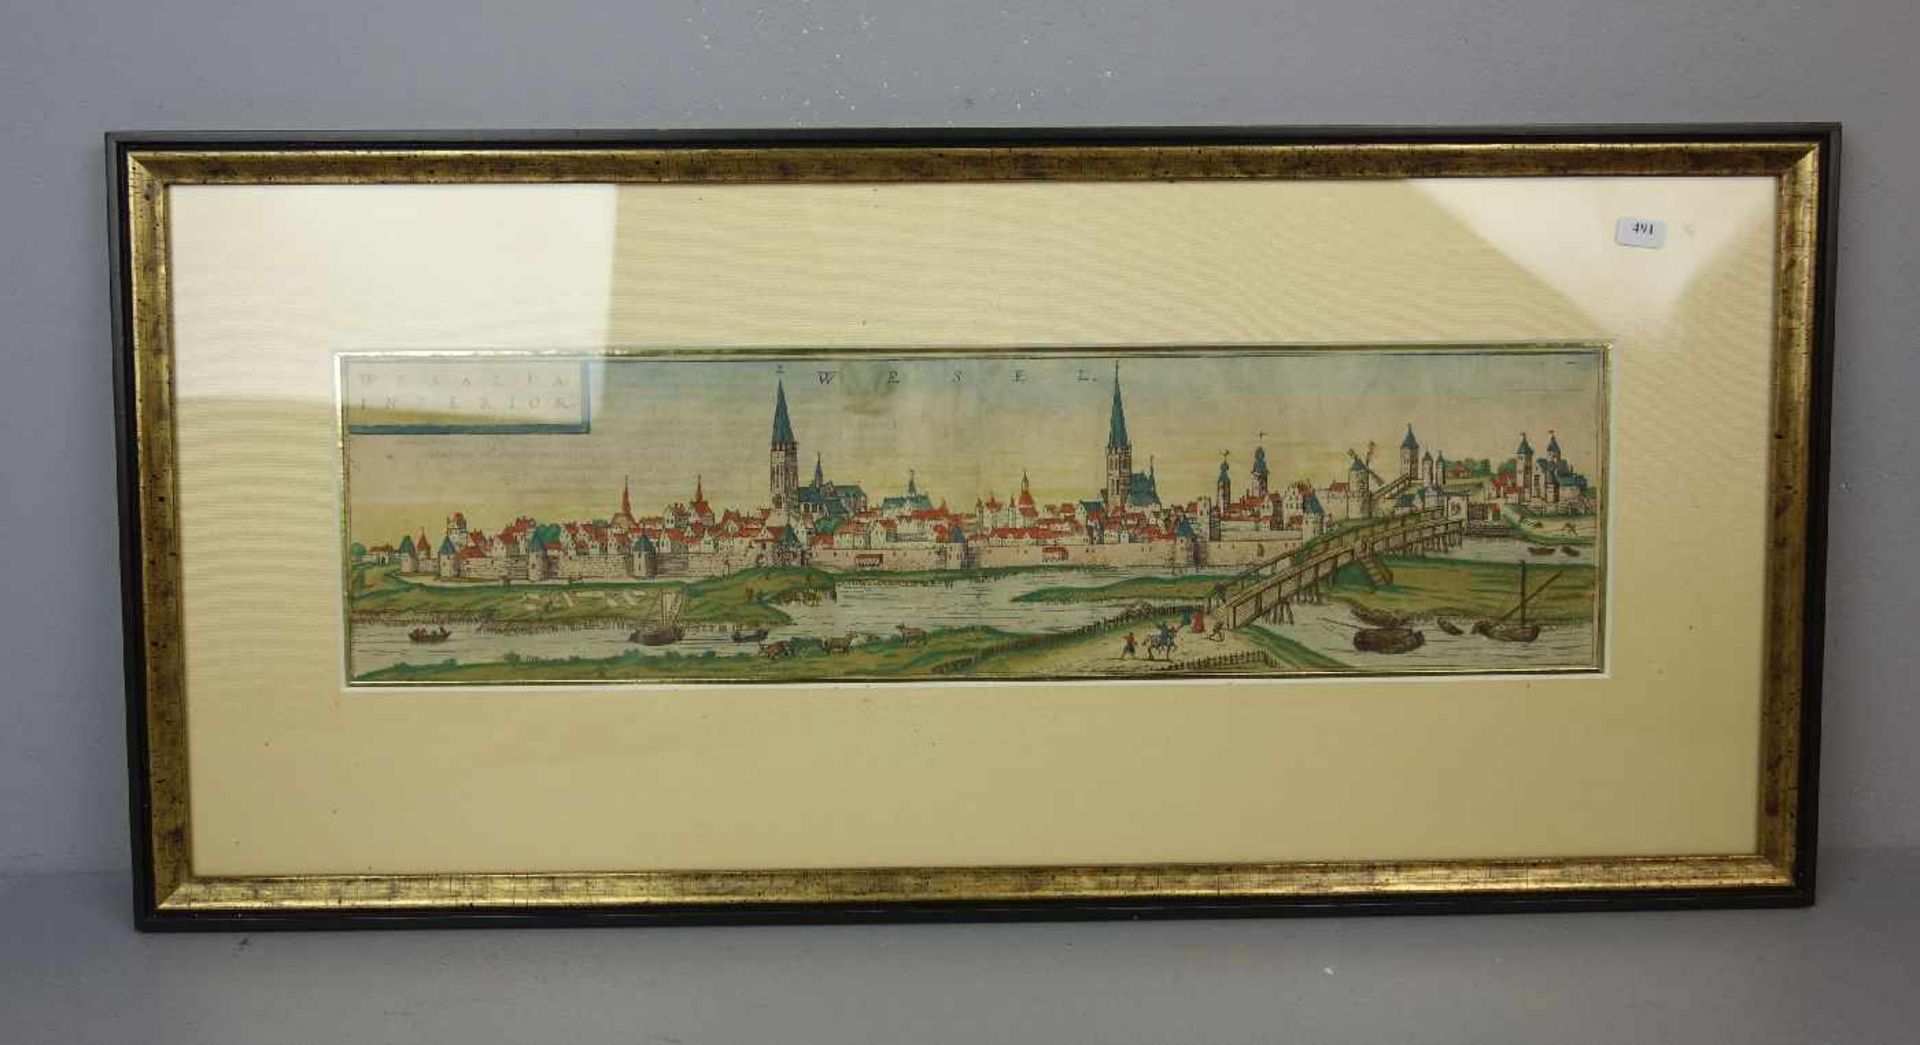 KOLORIERTER KUPFERSTICH WESEL, Ansicht der Stadt Wesel mit Titelkartusche "WESALIA INFERIOR"; aus